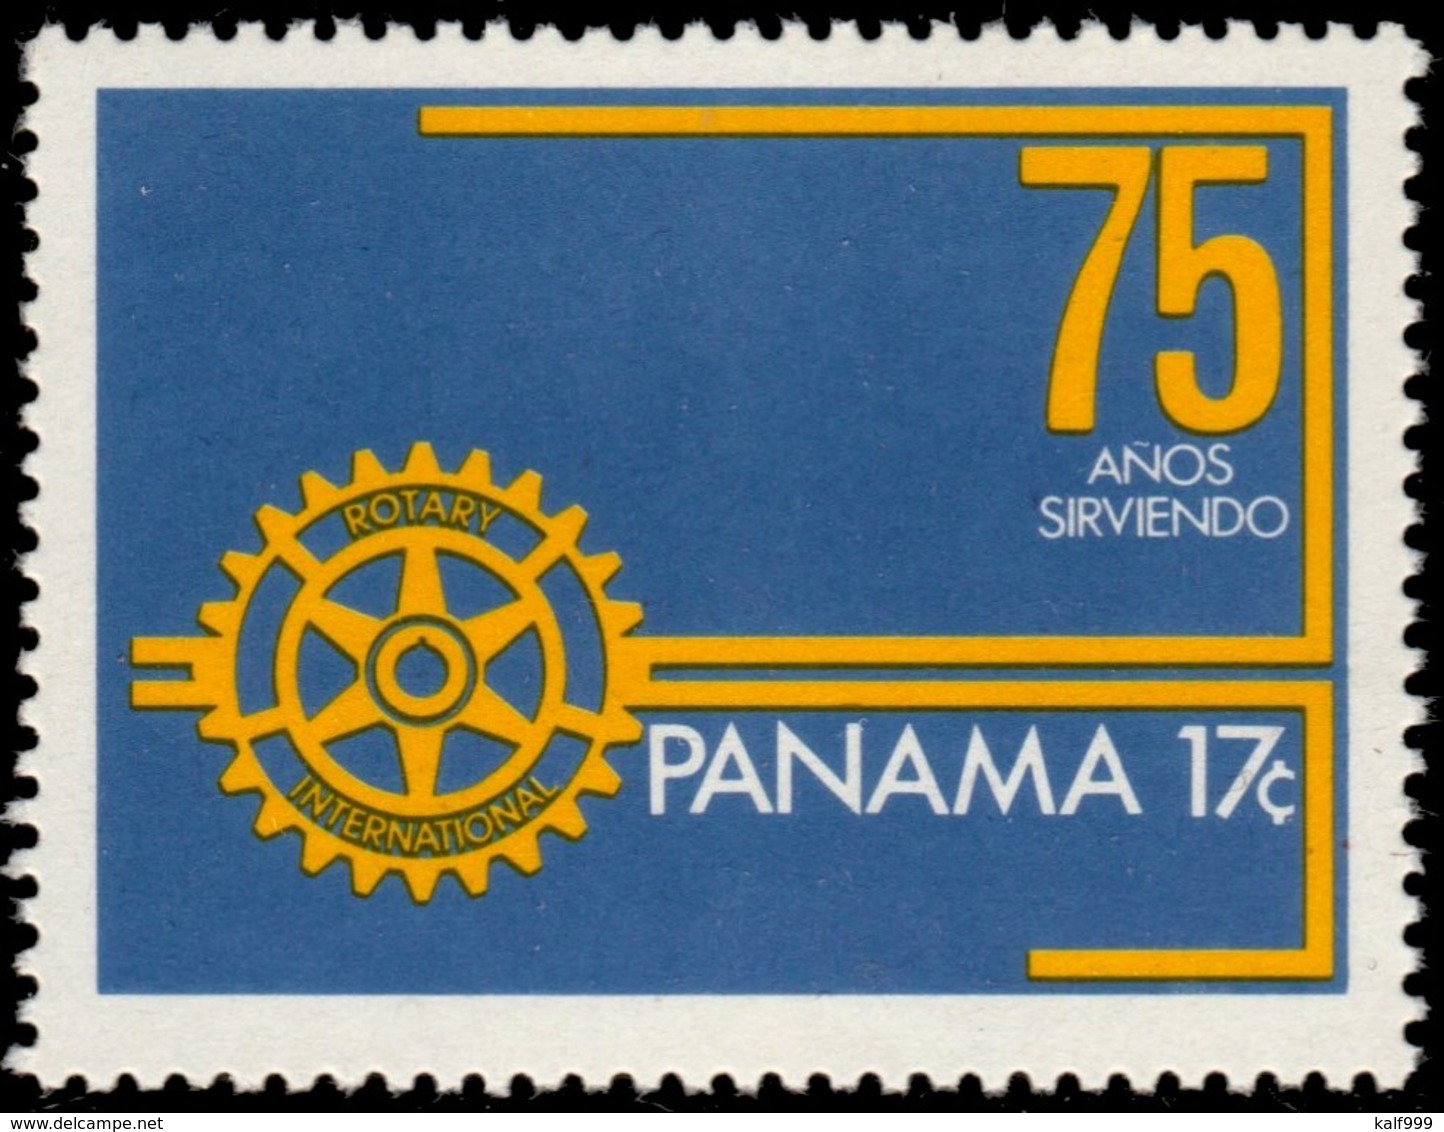 ~~~ Panama 1979 - Rotary - Mi. 1324 ** MNH ~~~ - Panama